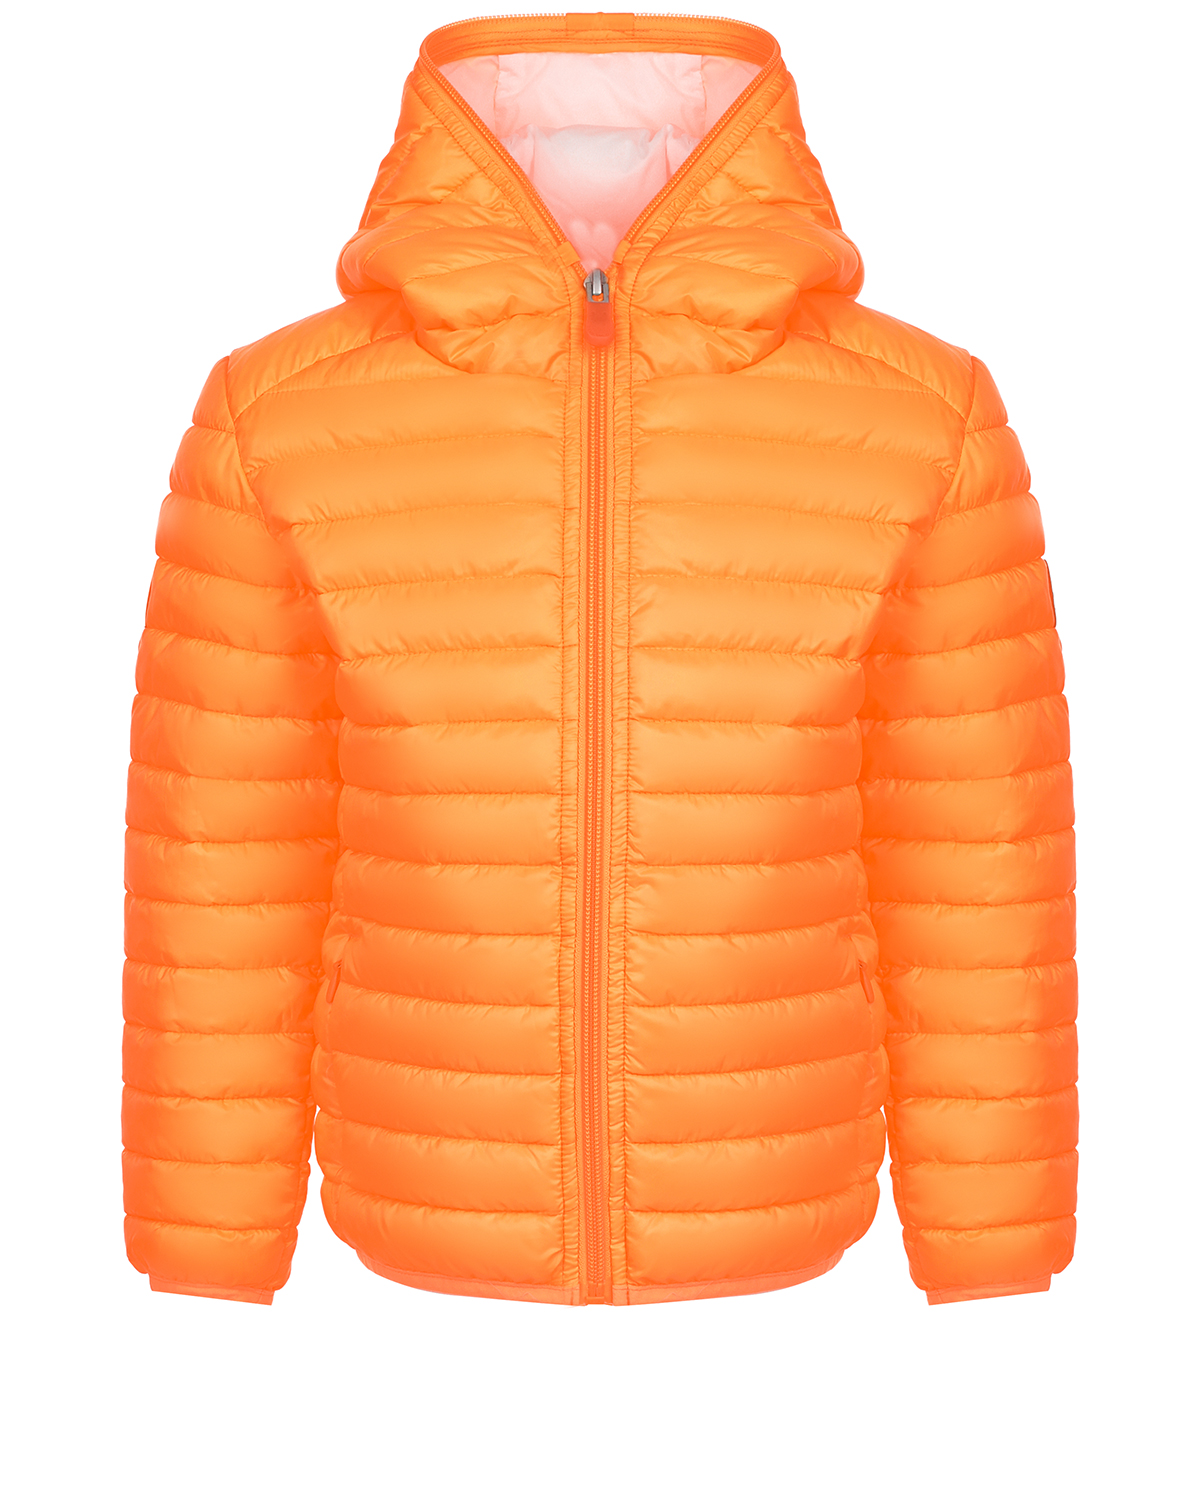 Оранжевая нейлоновая куртка Save the Duck розовое стеганое пальто с капюшоном save the duck детское